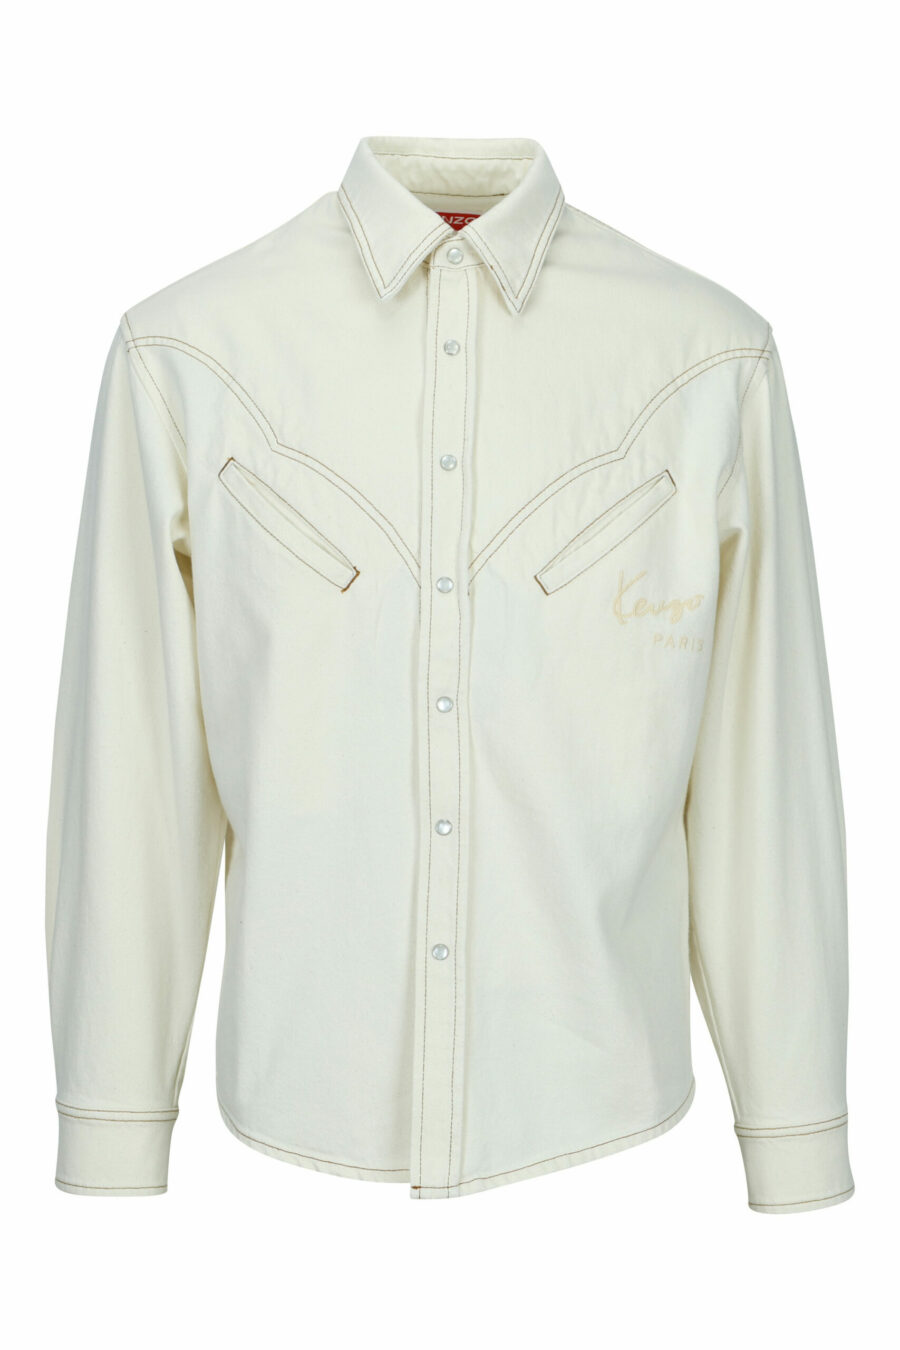 Camisa vaquera blanca estilo "western" con logo - 3612230590823 scaled